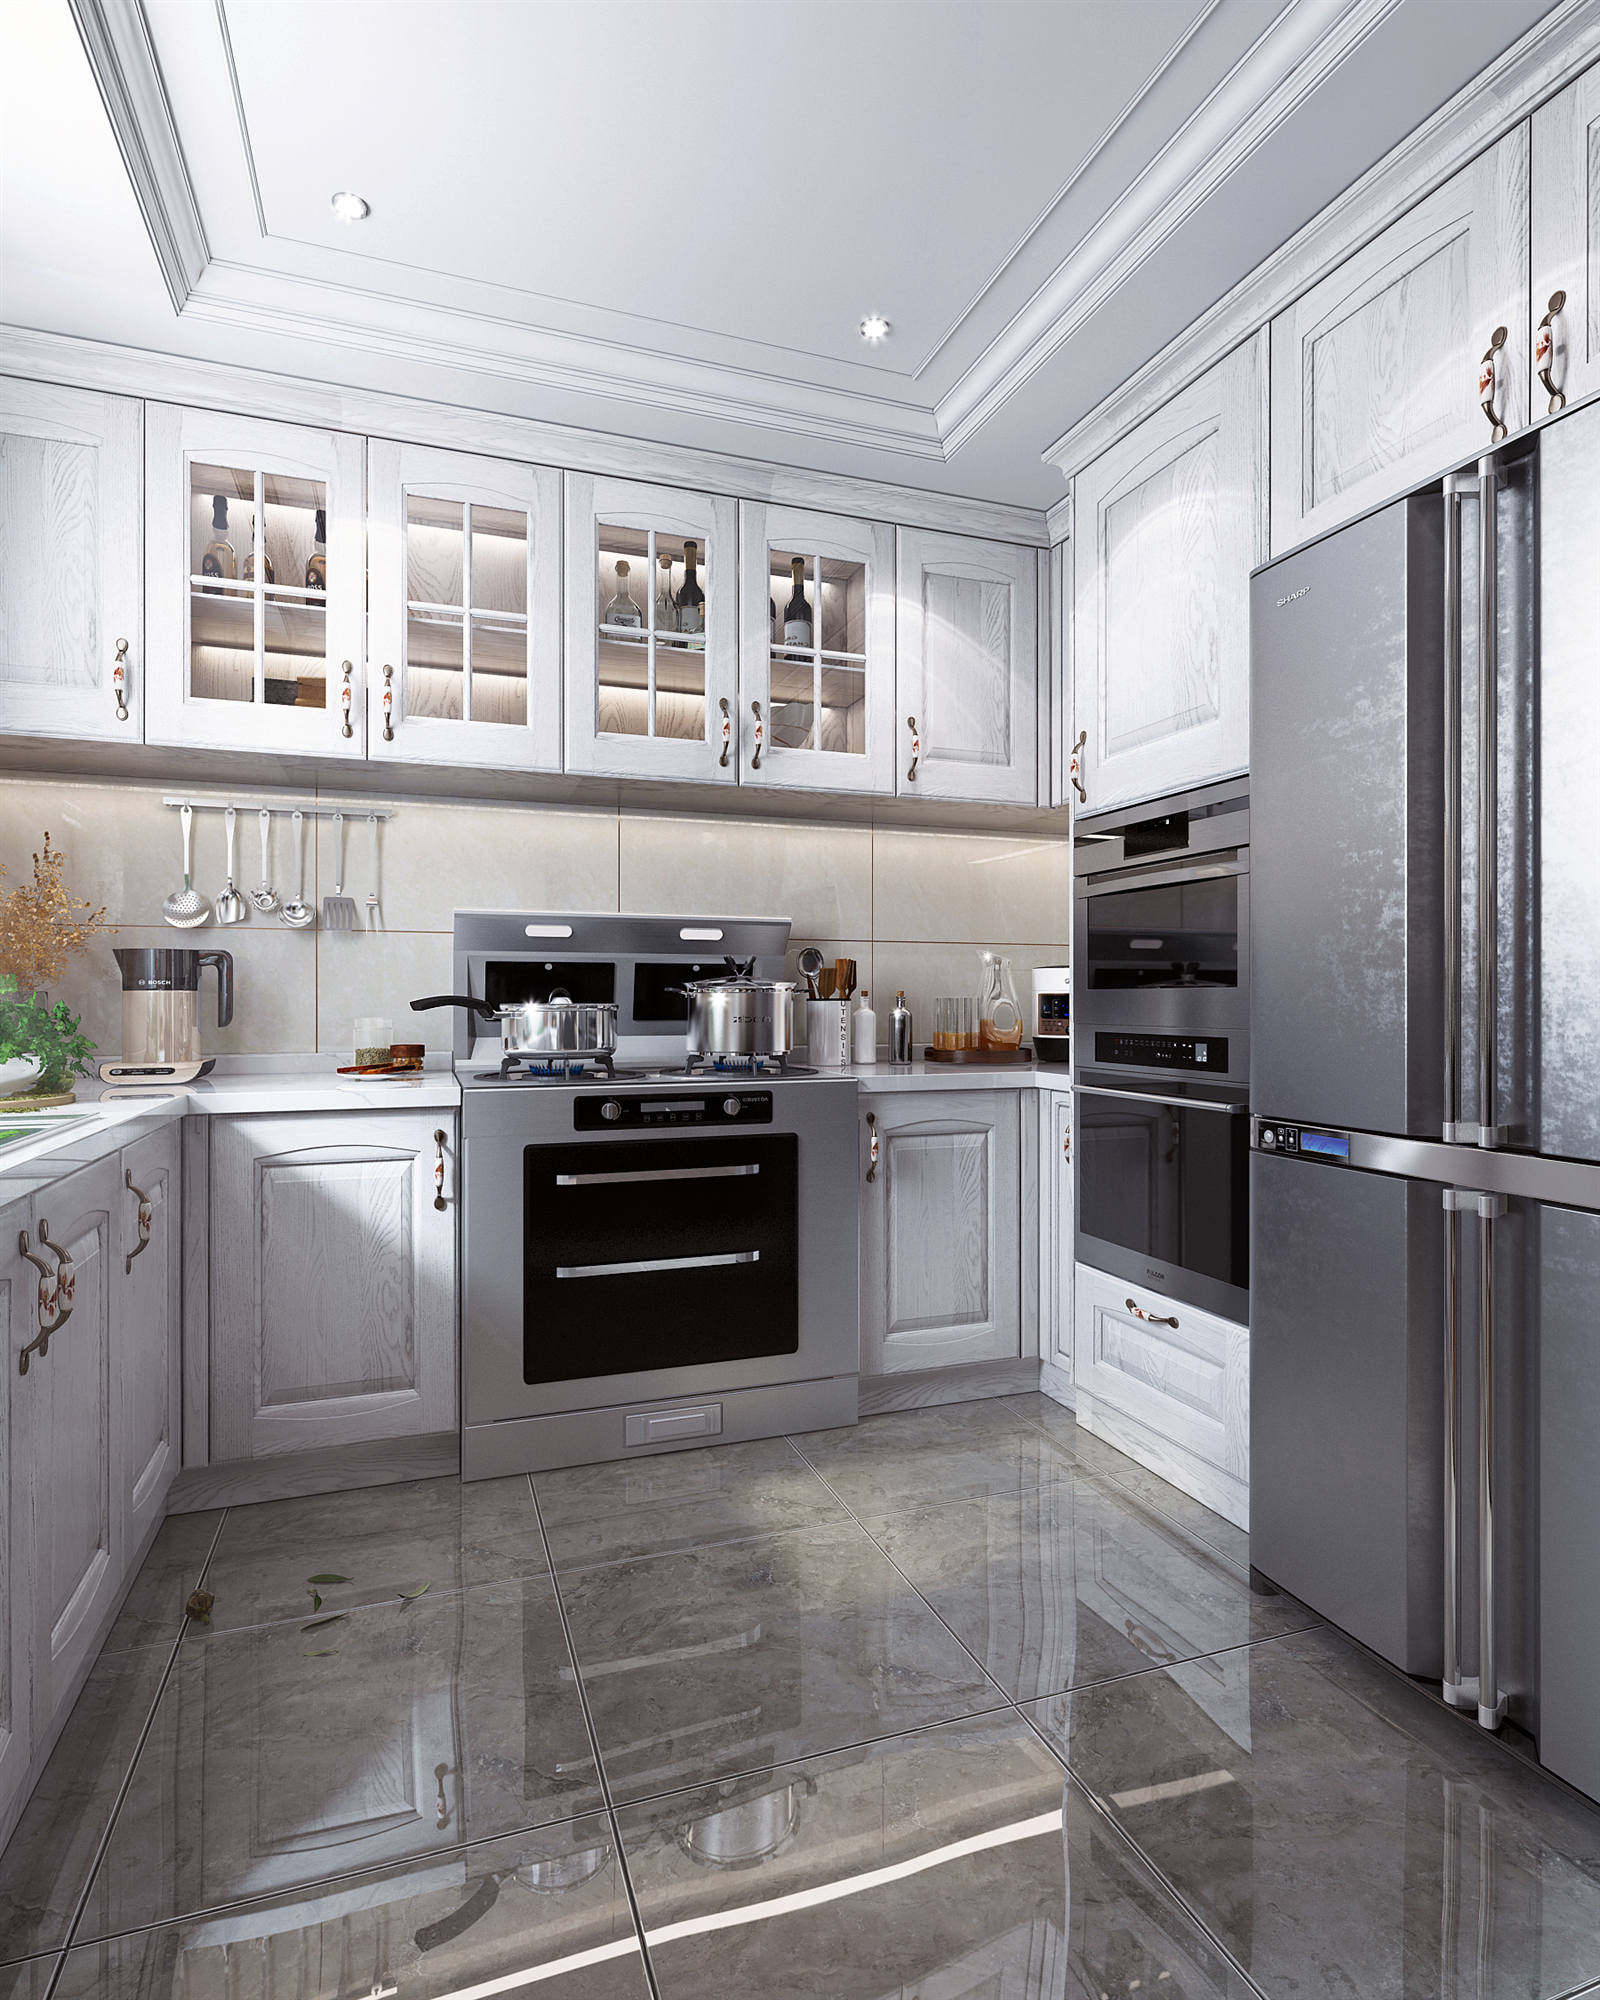 简欧欧式风格 厨房橱柜 厨房电器 厨房用品3d模型下载